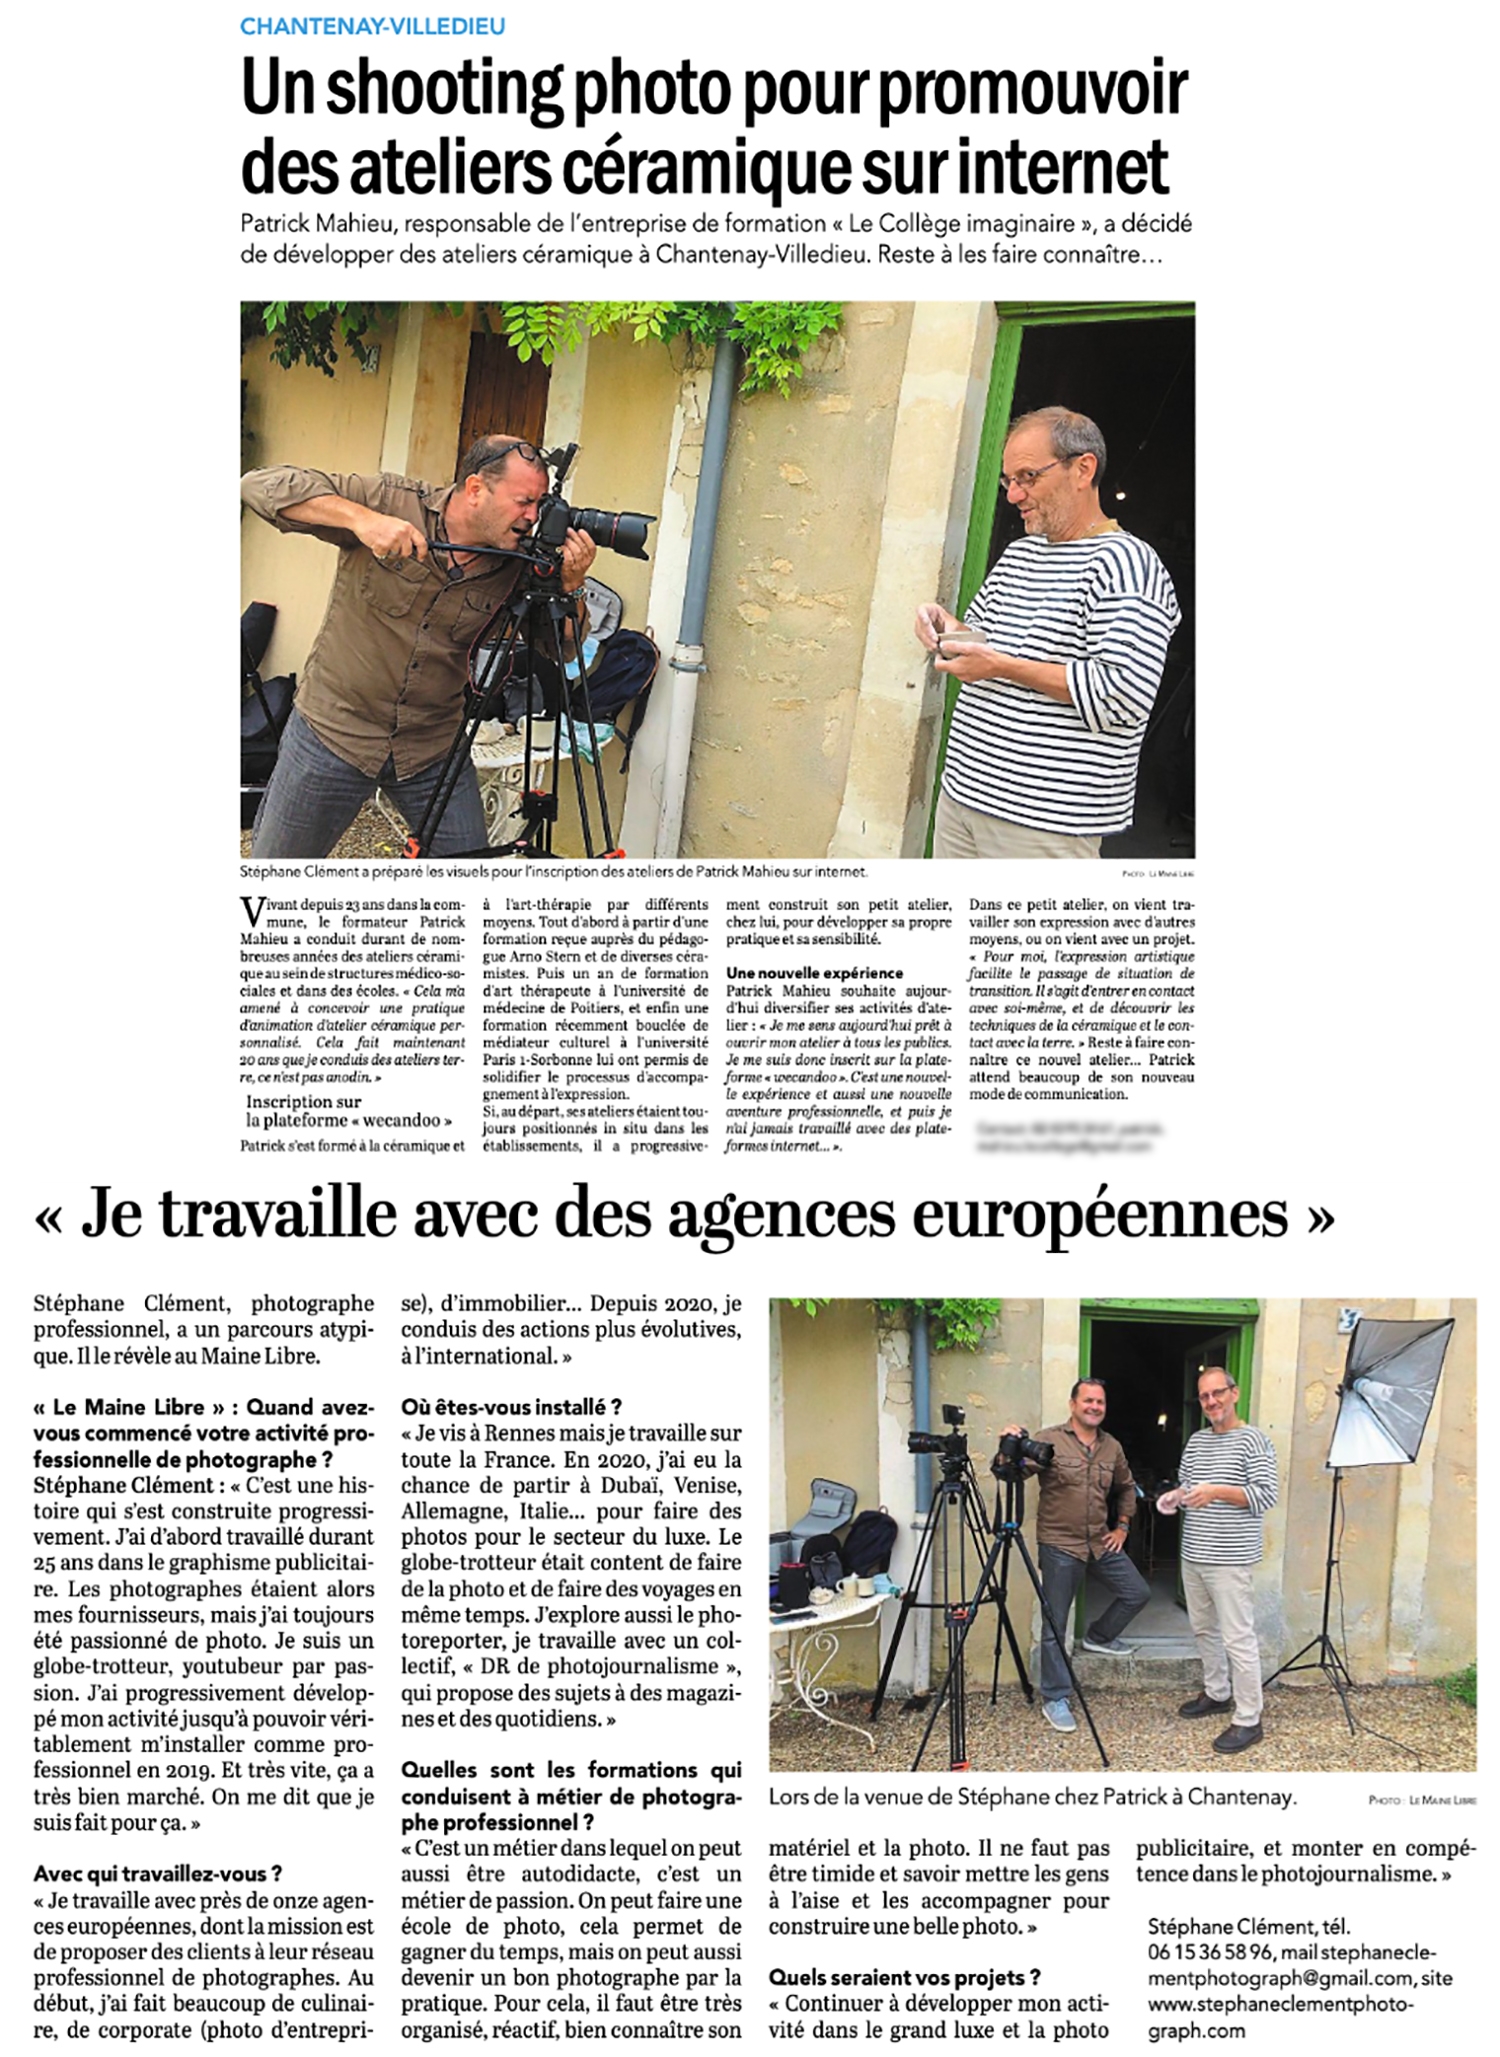 Stéphane Clément photographe professionnel, article journal ouest france le maine libre, aout 2021